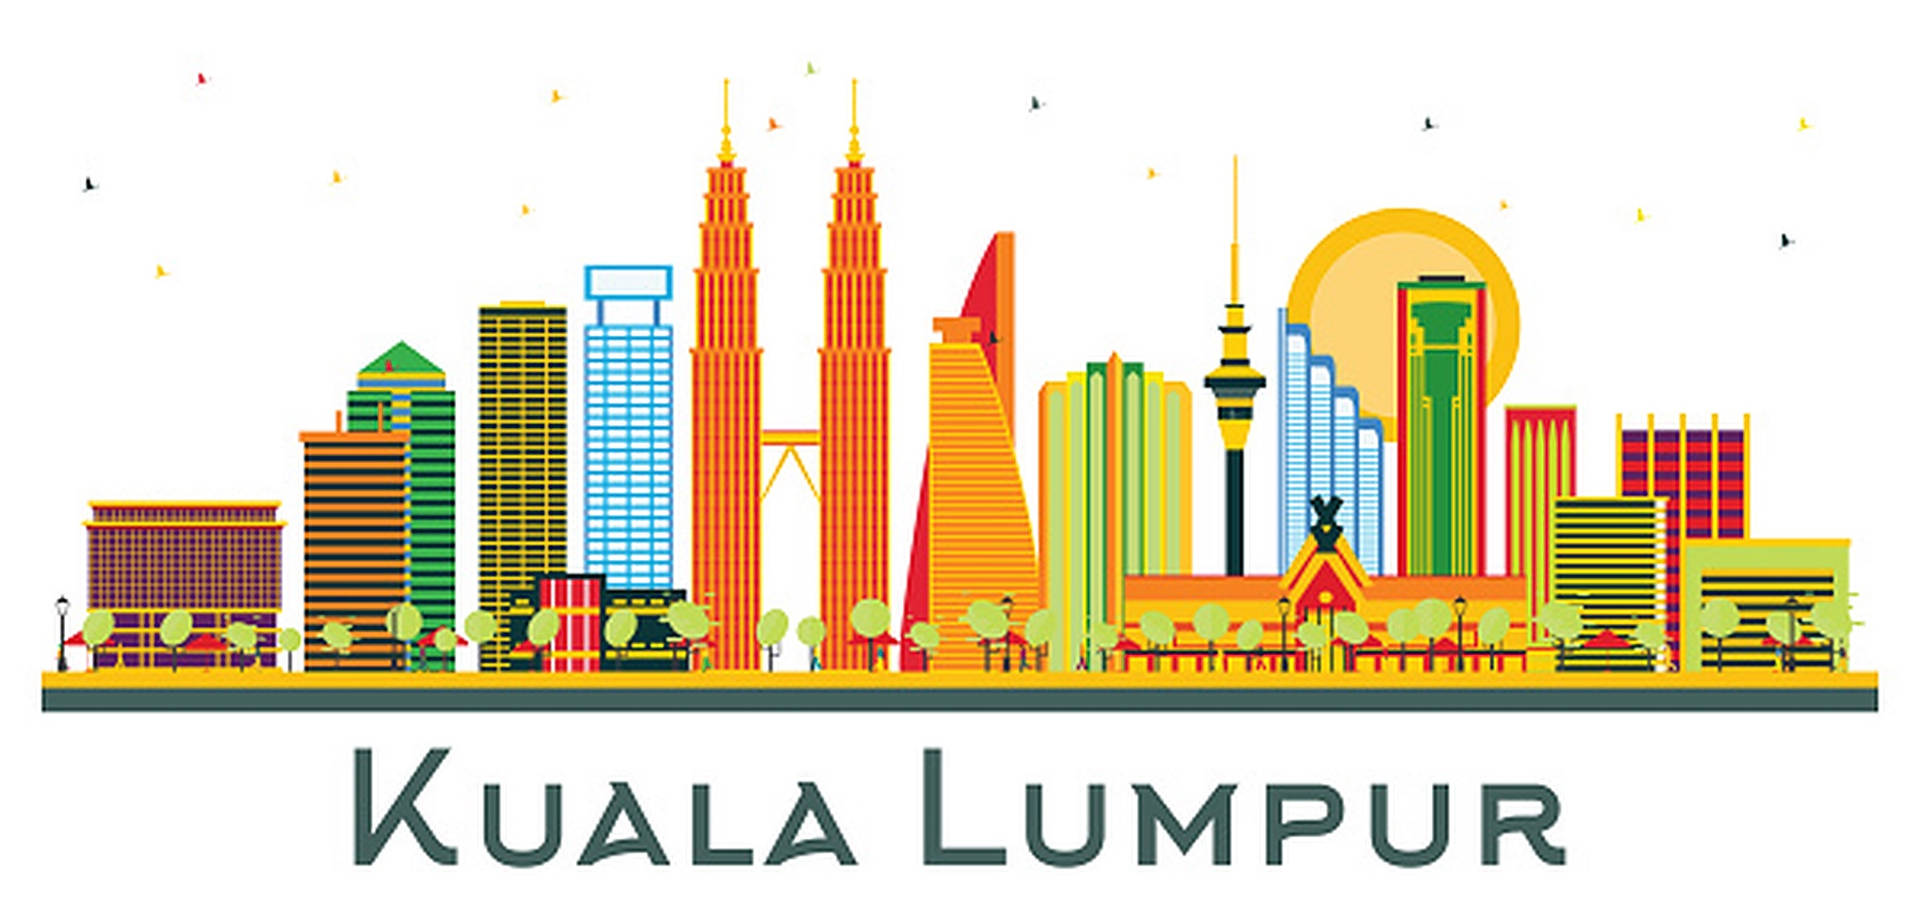 Kuala Lumpur Graphic Art